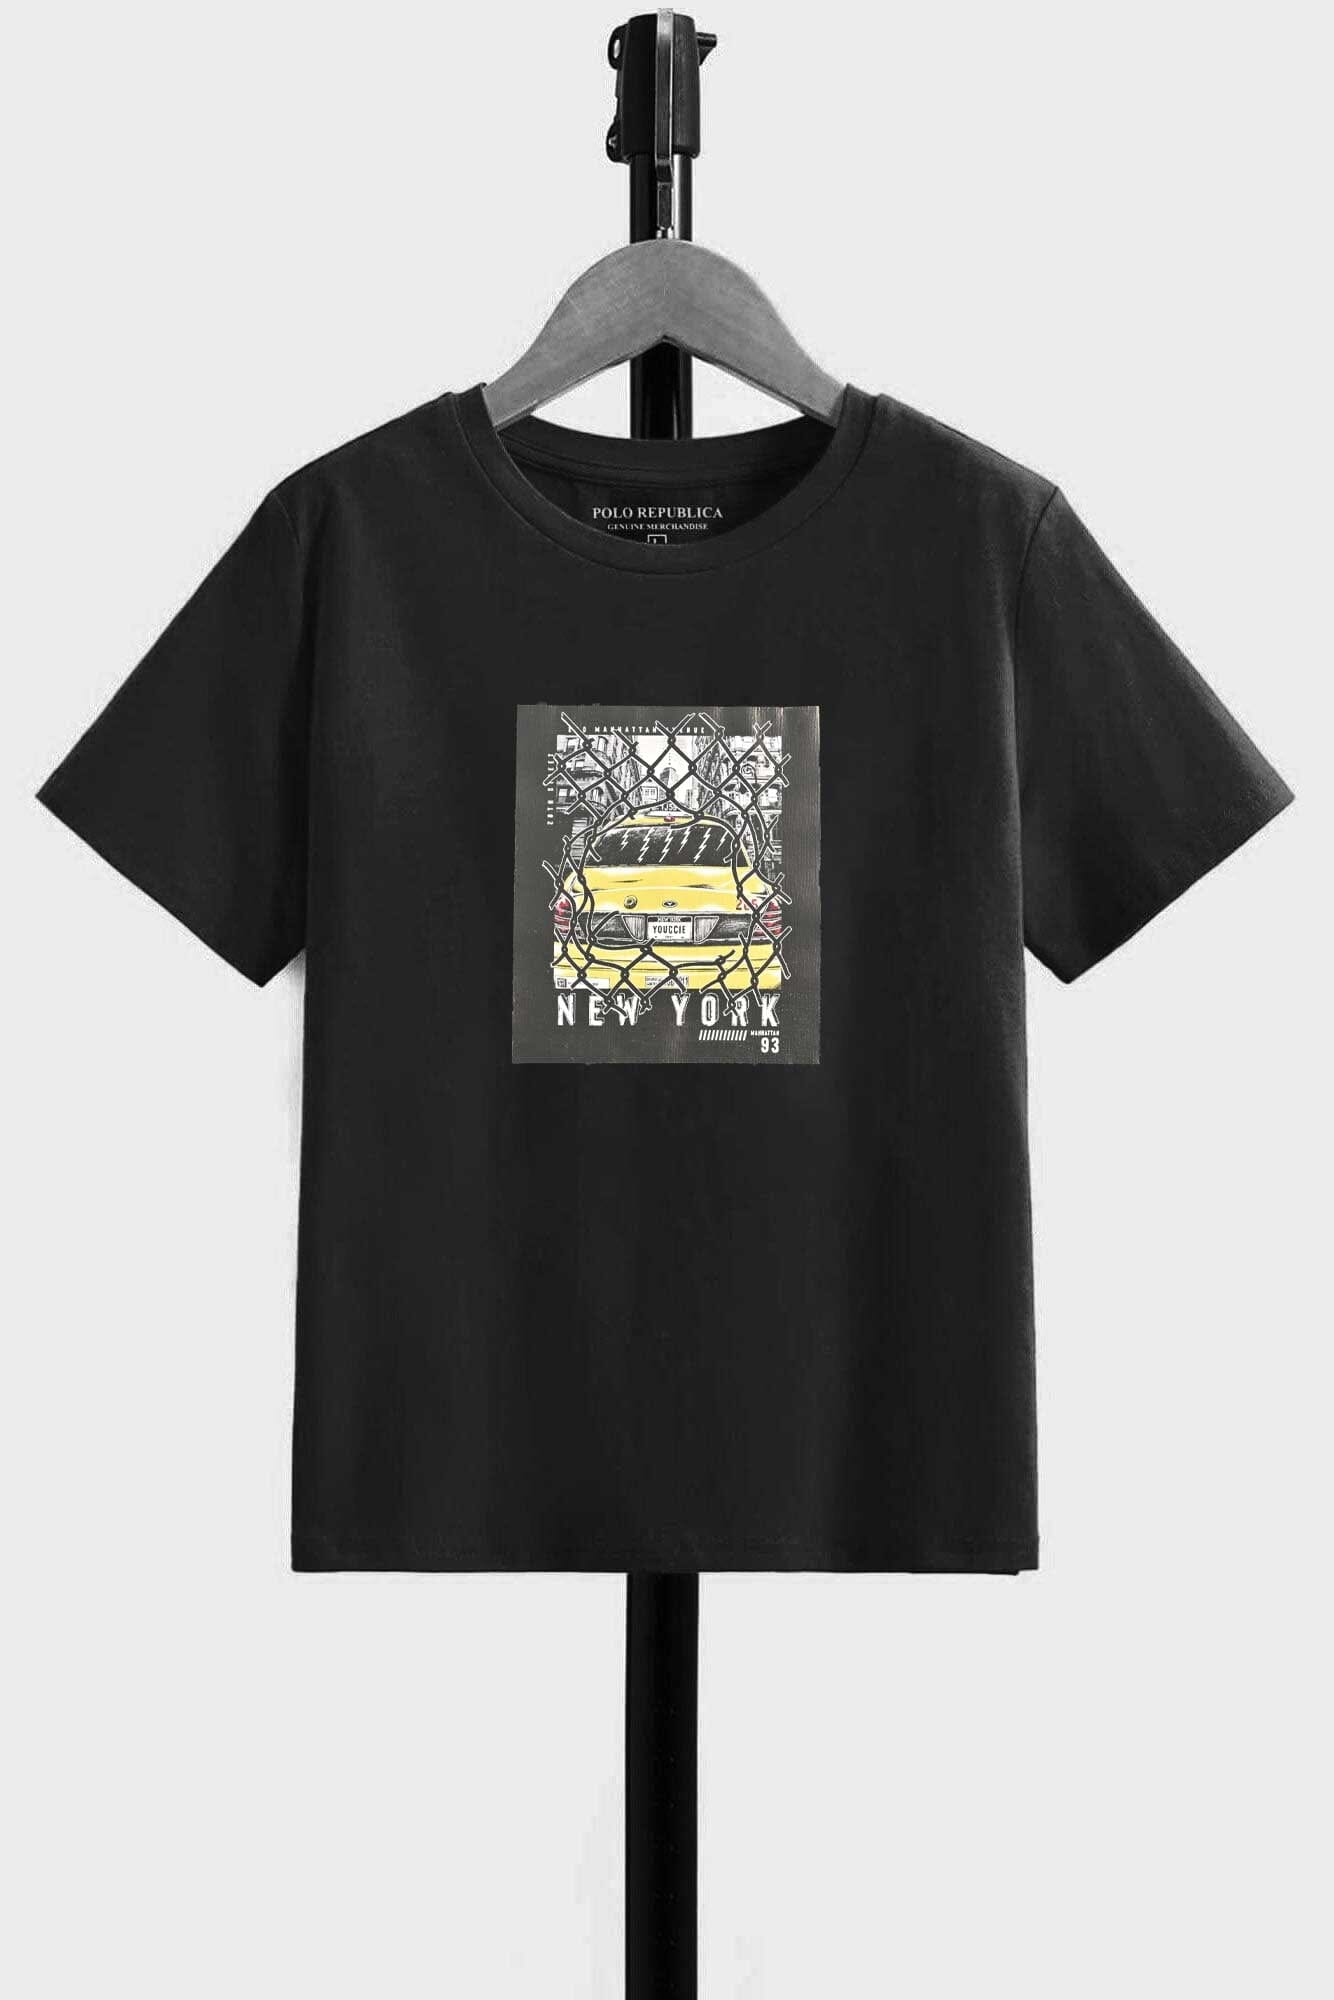 Polo Republica Boy's New York Taxi Printed Tee Shirt Boy's Tee Shirt Polo Republica 